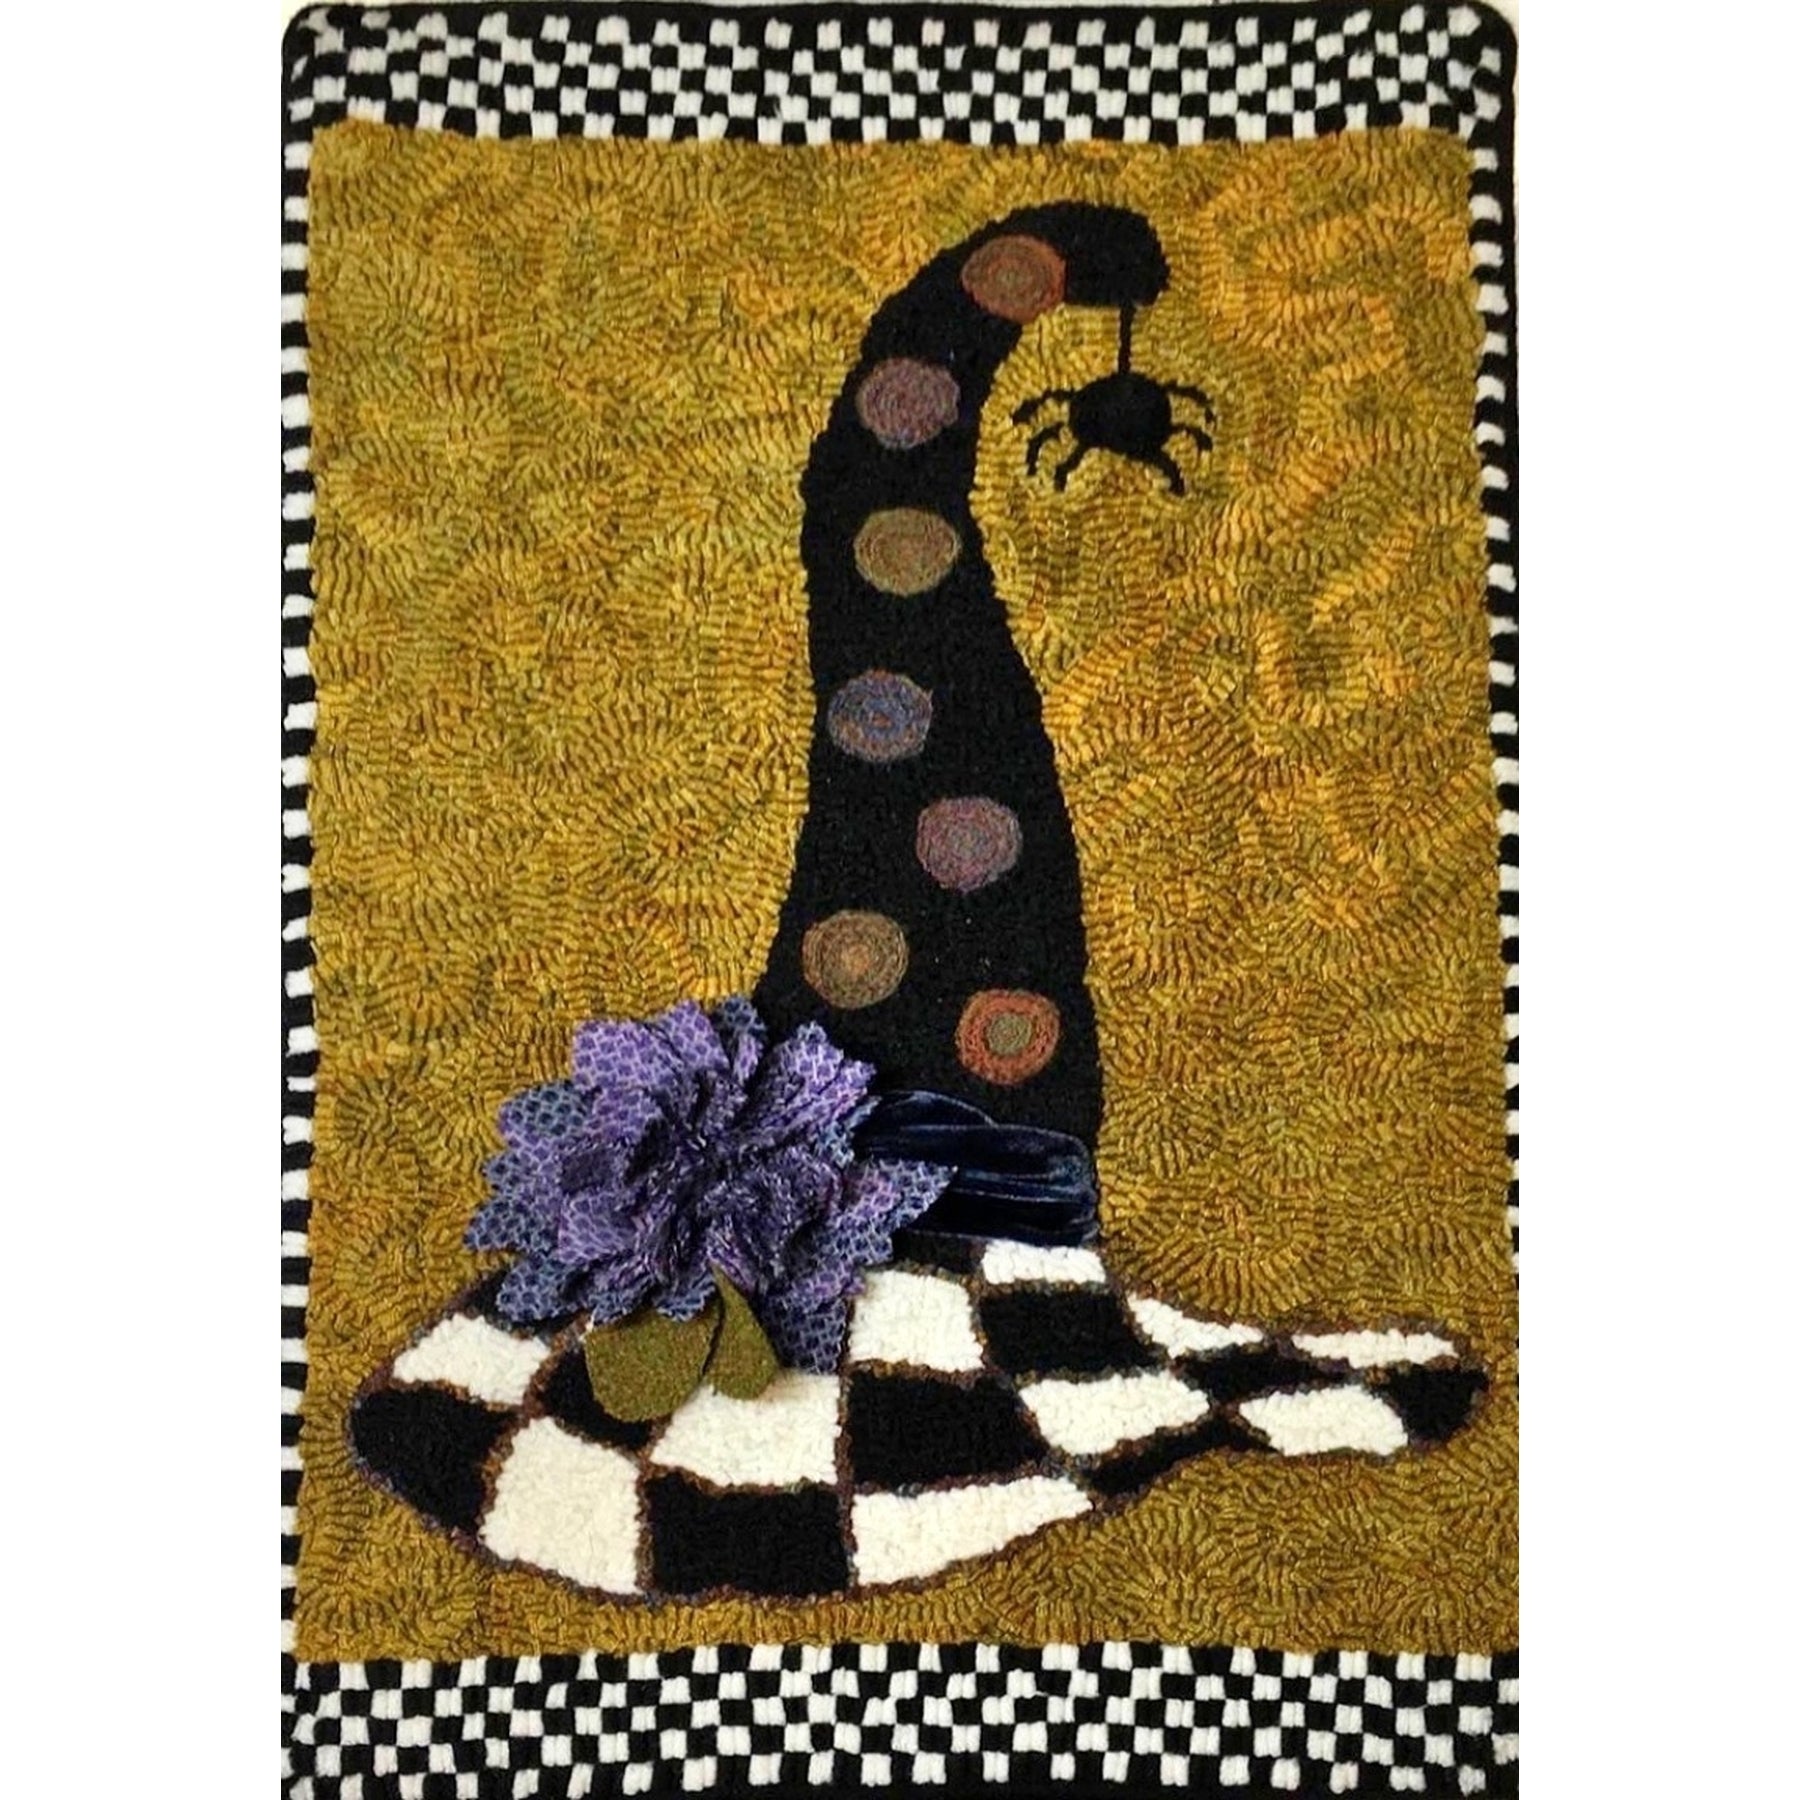 Witchen Hat, rug hooking pattern